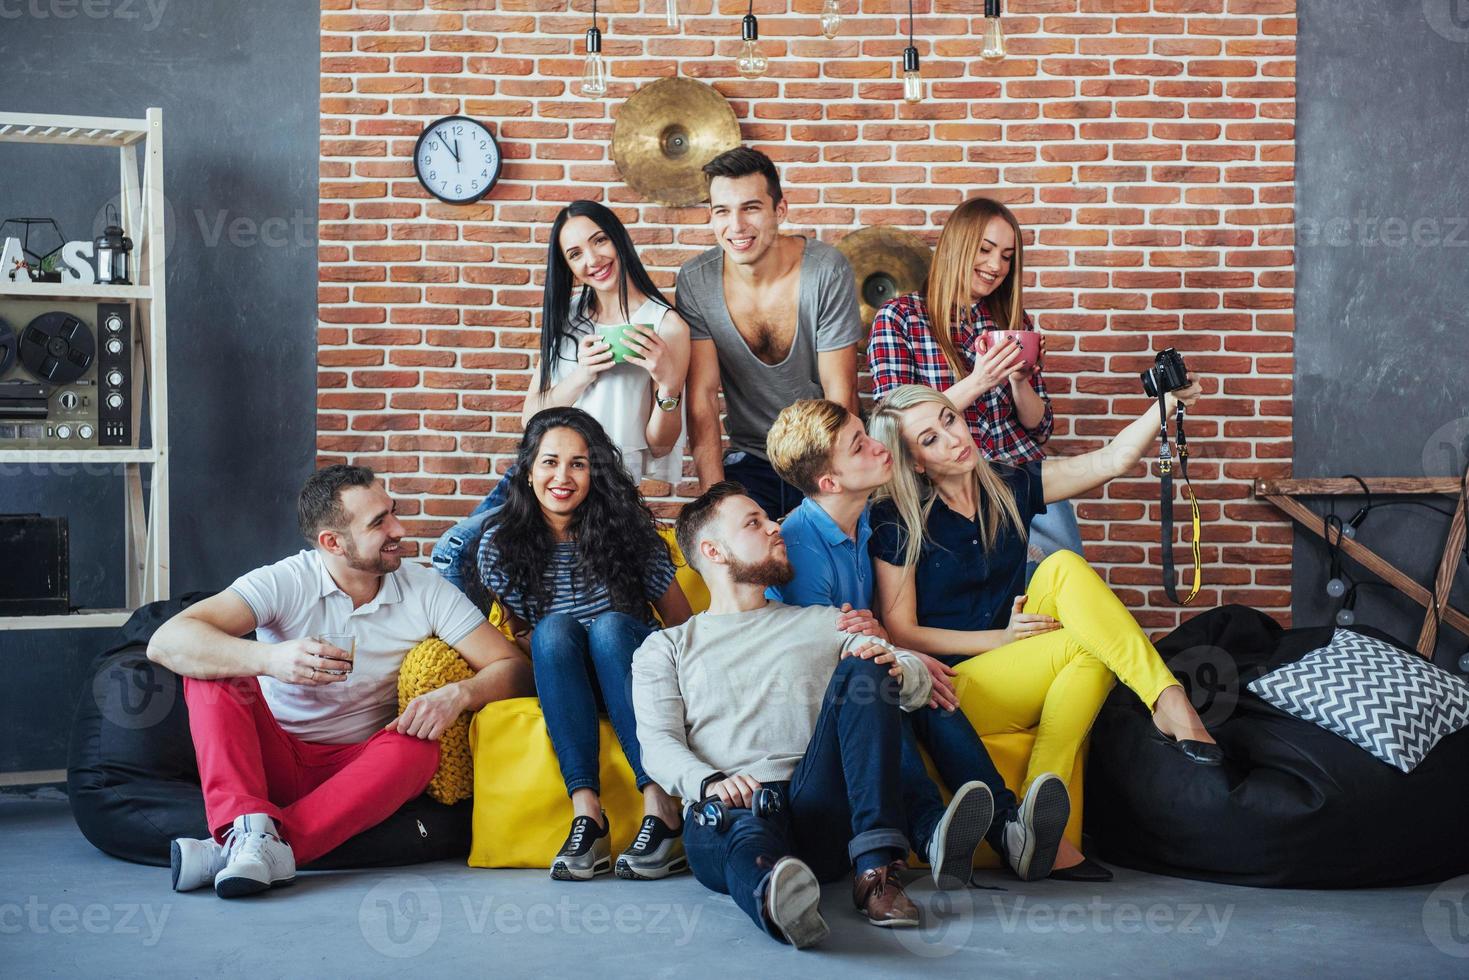 groepsportret van multi-etnische jongens en meisjes met kleurrijke modieuze kleding met vriend poseren op een bakstenen muur, stedelijke stijl mensen die plezier hebben, concepten over jeugd saamhorigheid levensstijl foto